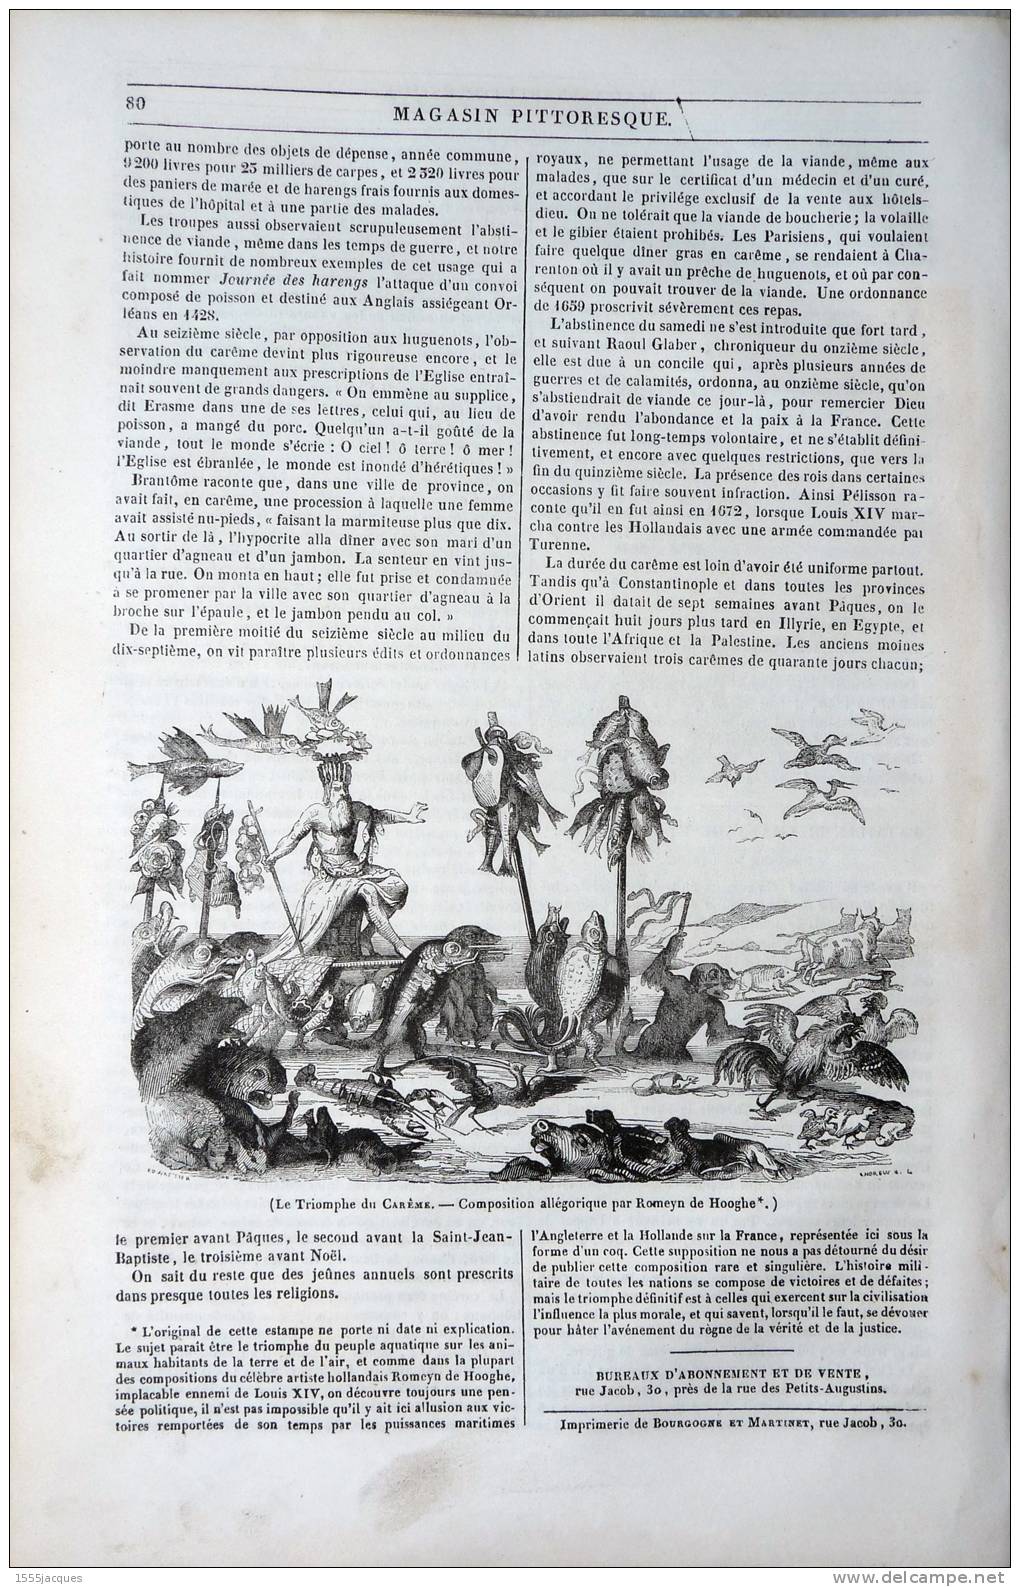 LE MAGASIN PITTORESQUE - MARS. 1842 - N°10 : PARQUES GERMAIN PILON - ARTILLERIE XVIe - CENTRE DE GRAVITÉ - CARÊME -